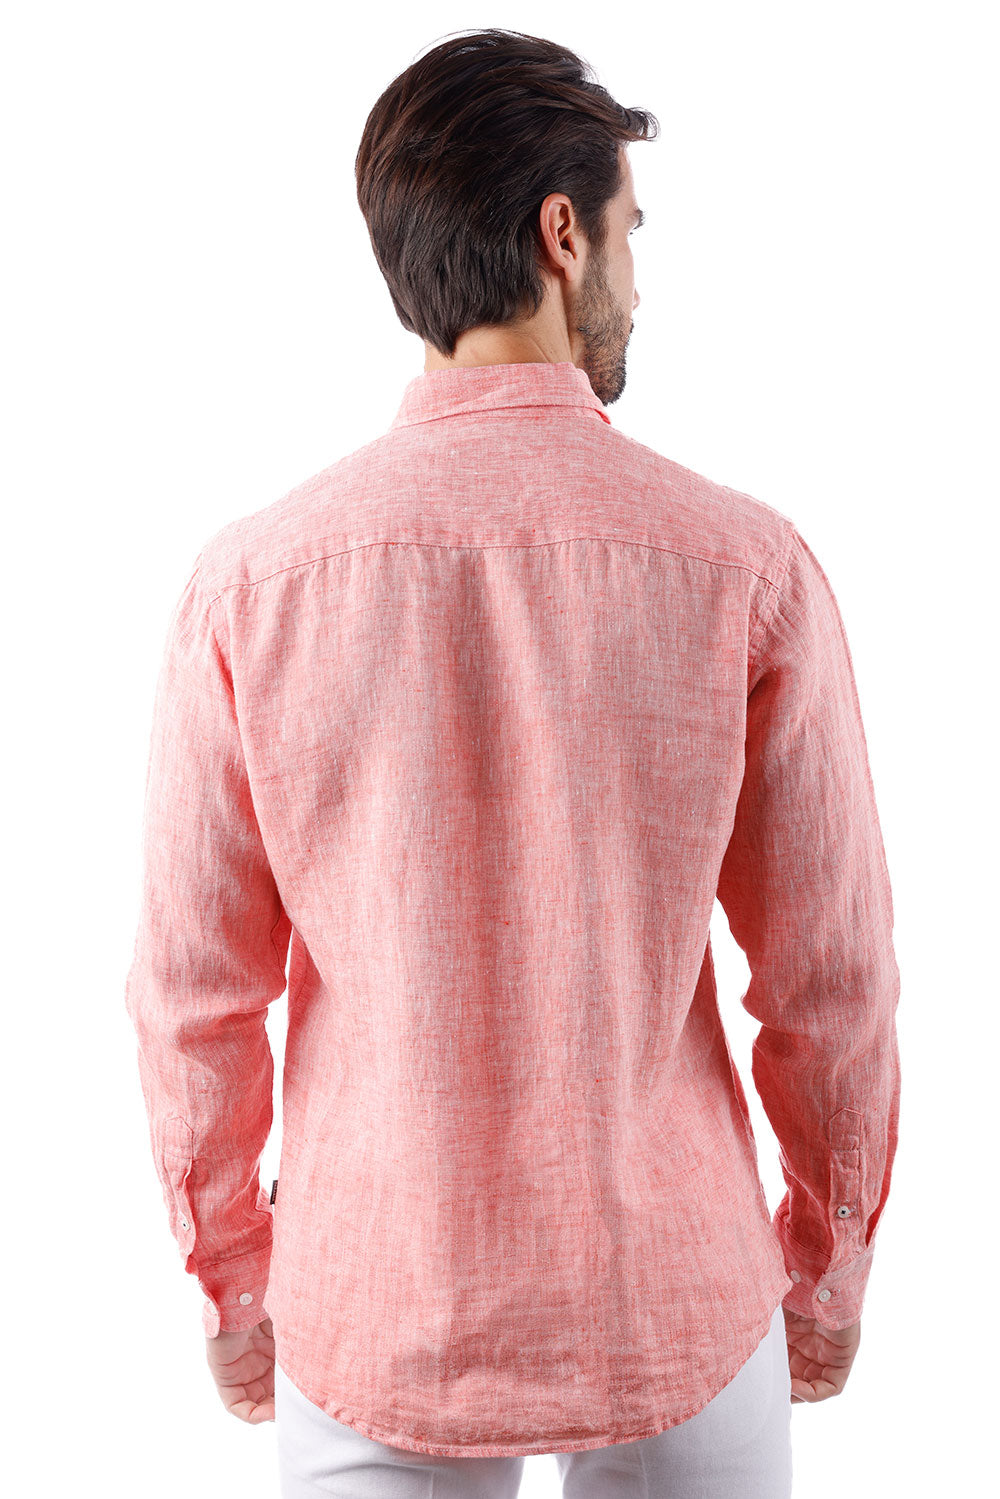 BARABAS Men's Linen Lightweight Button Down Long Sleeve Shirt 4B30 Peach